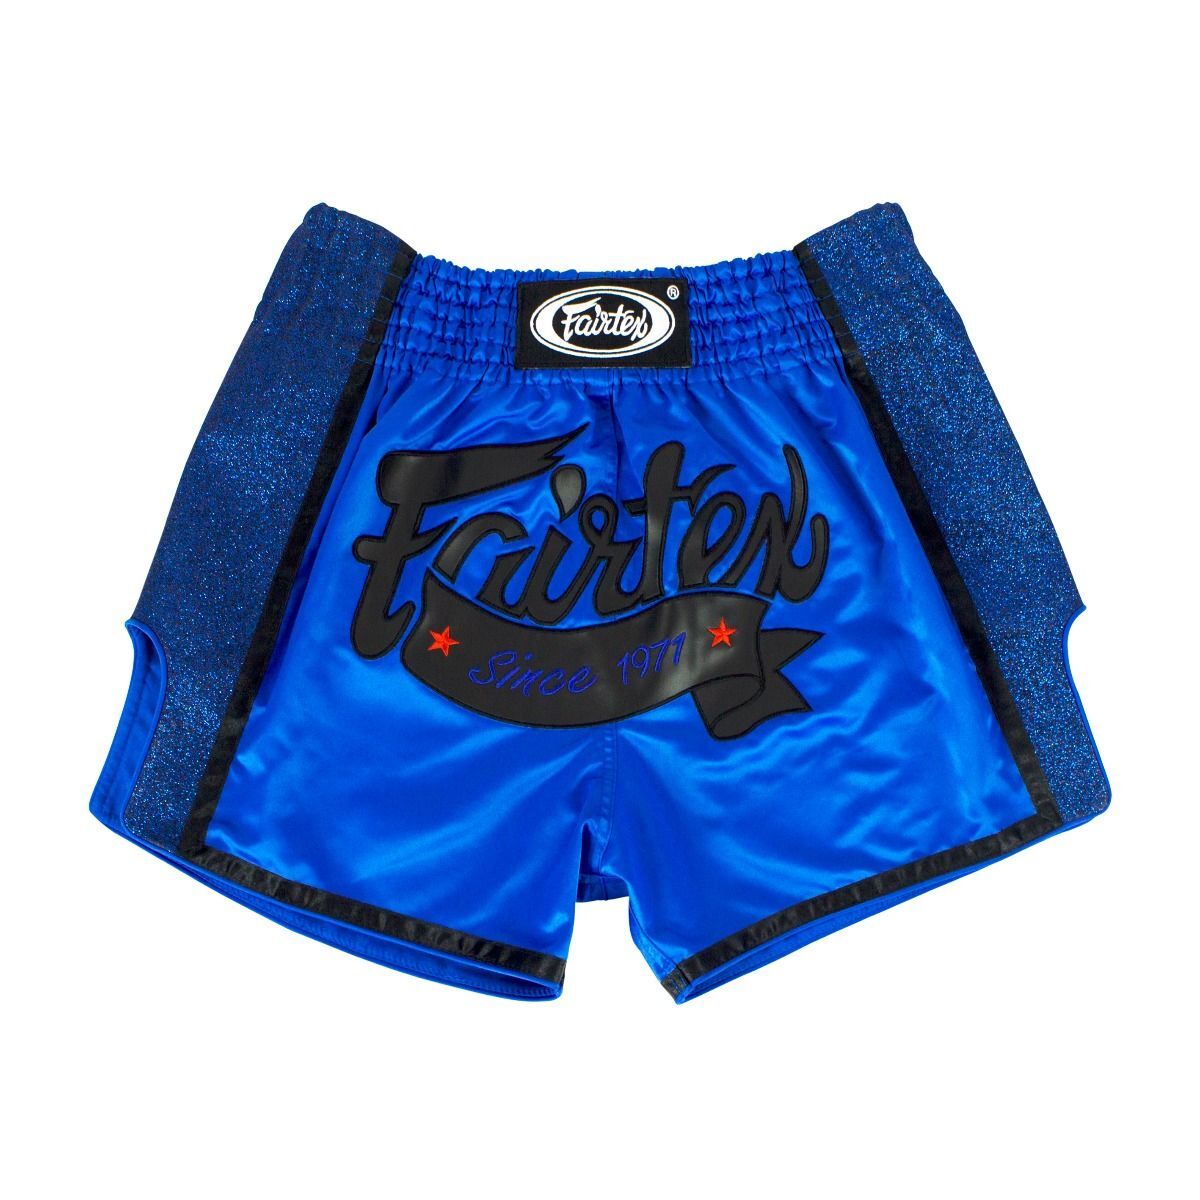 FAIRTEX Royal Blue Slim Cut Muay Thai Boxing Shorts (BS1702) - Small